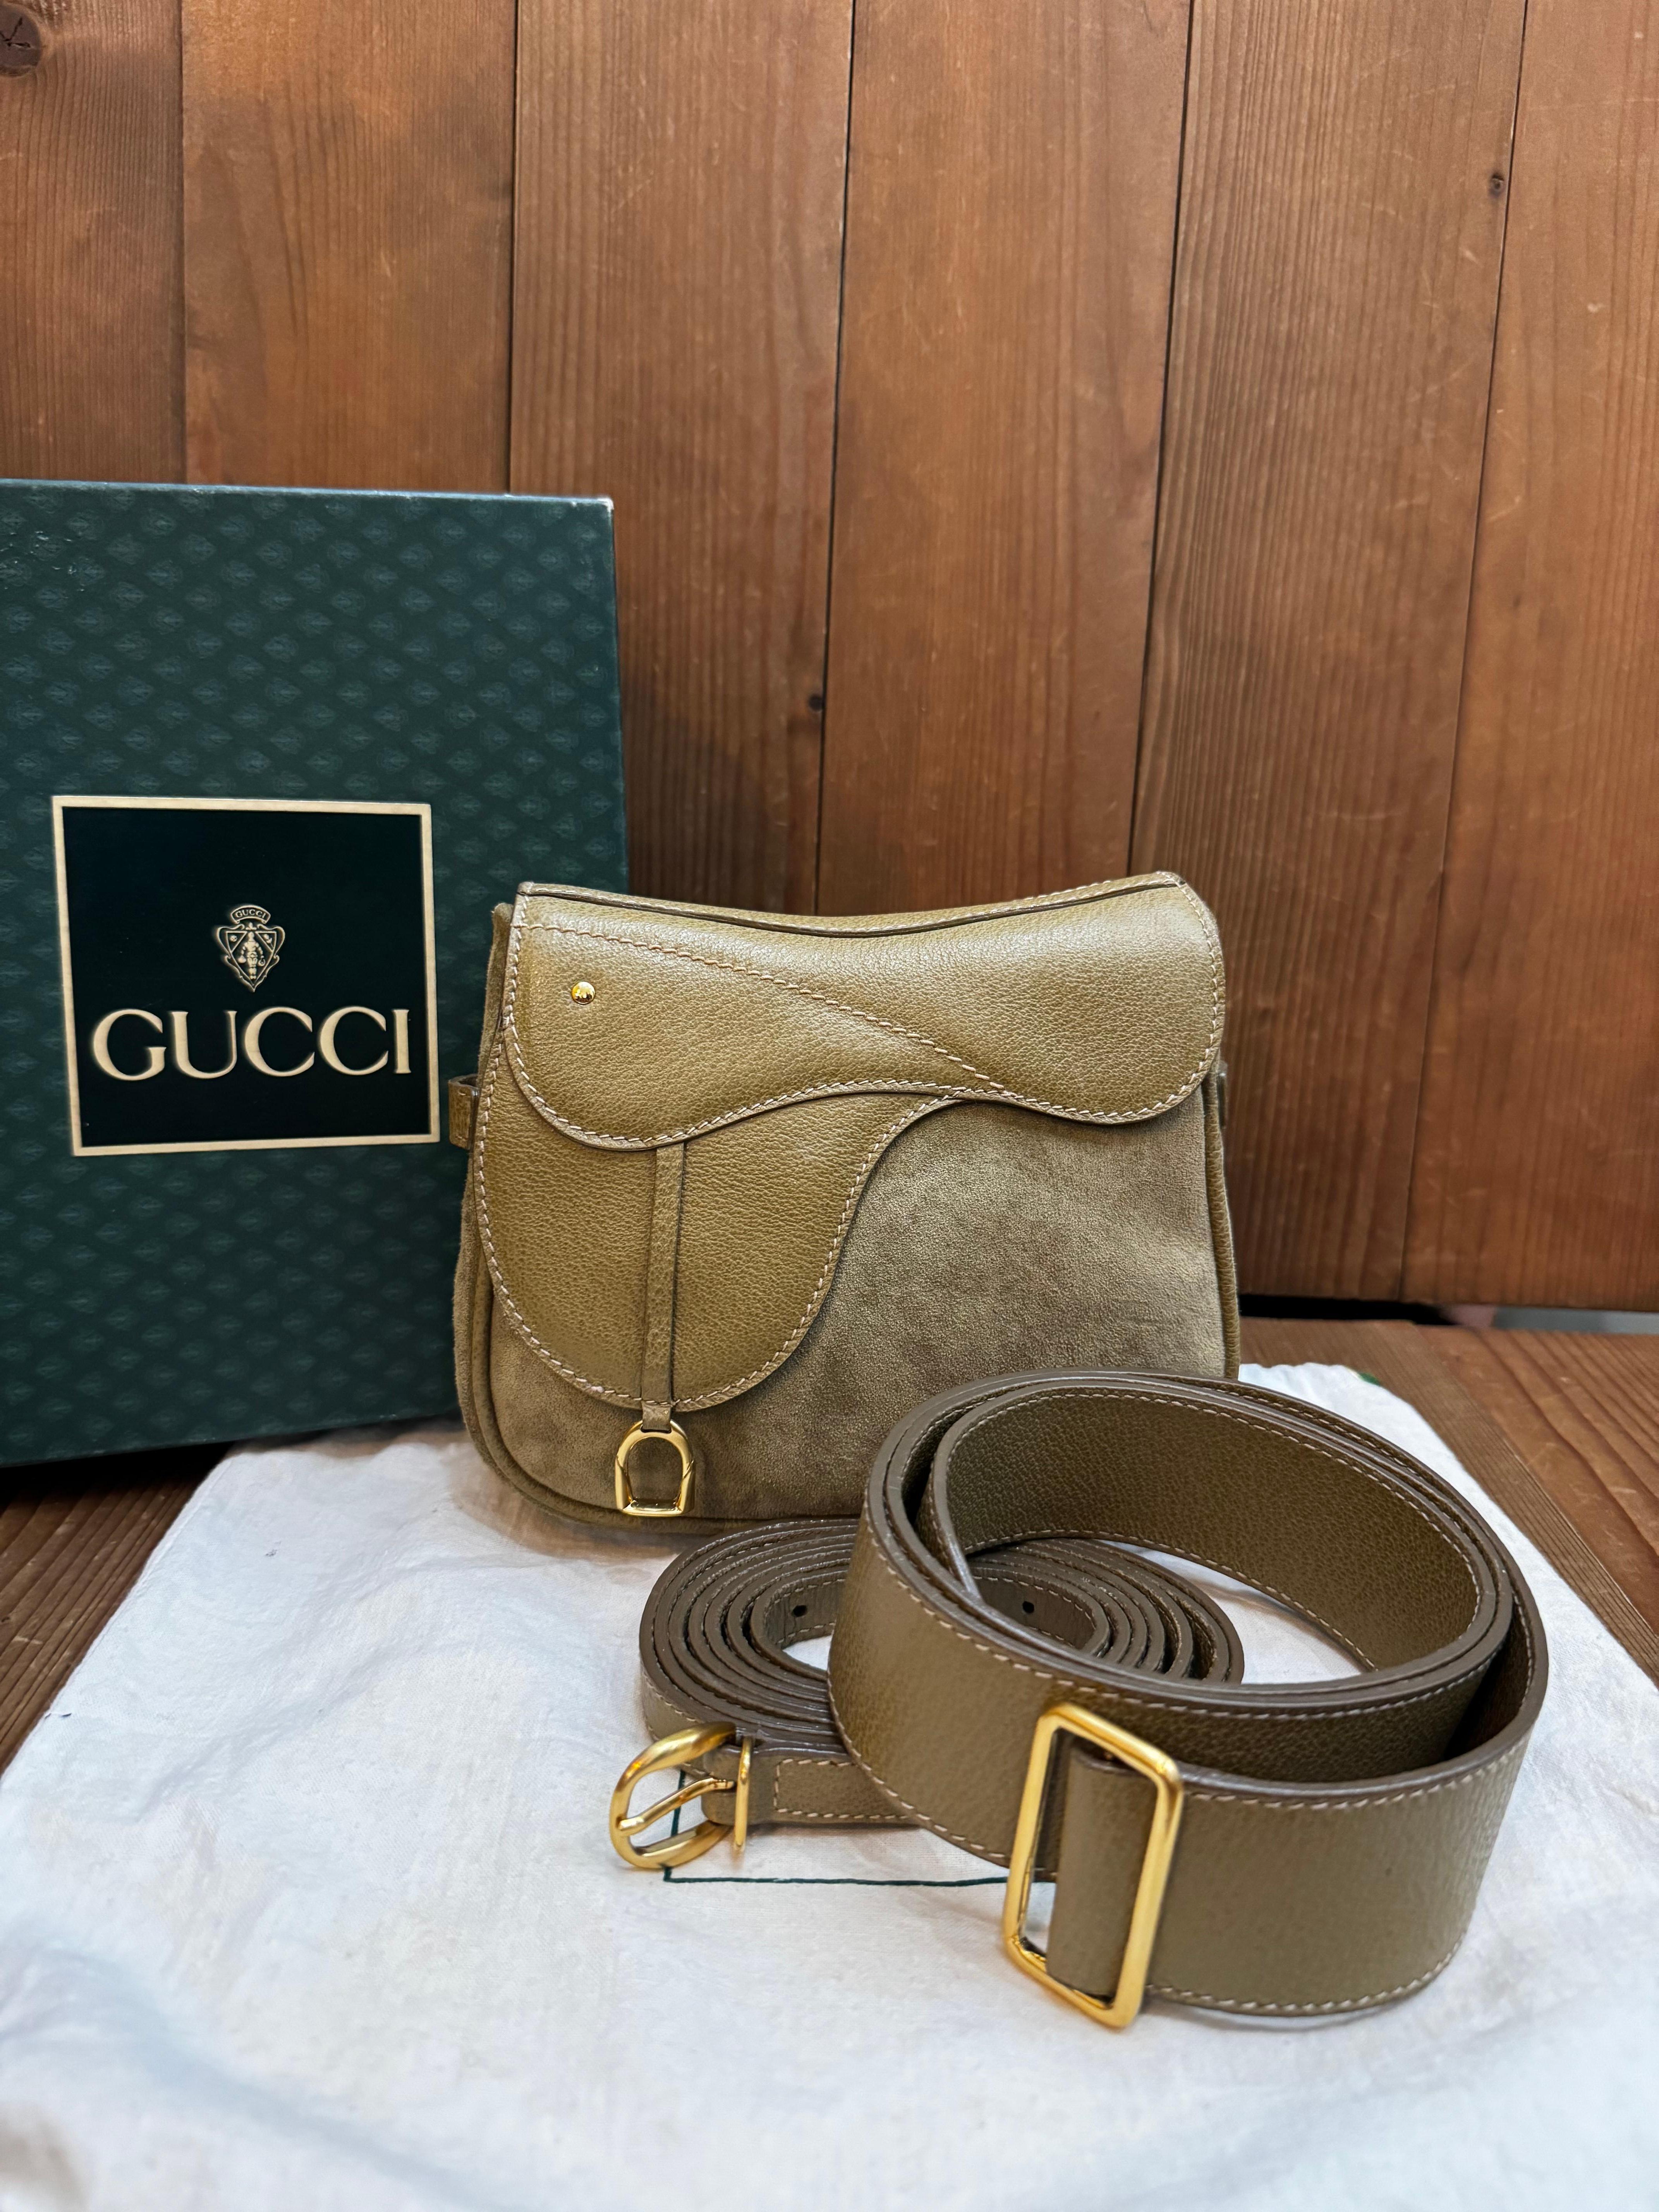 Ce mini sac à main vintage de Gucci est confectionné en cuir de porc et nubuck de couleur kaki et est doté de ferrures dorées. Ce sac est doté d'une bandoulière amovible et d'une ceinture du même cuir qui permet de le porter en bandoulière ou à la